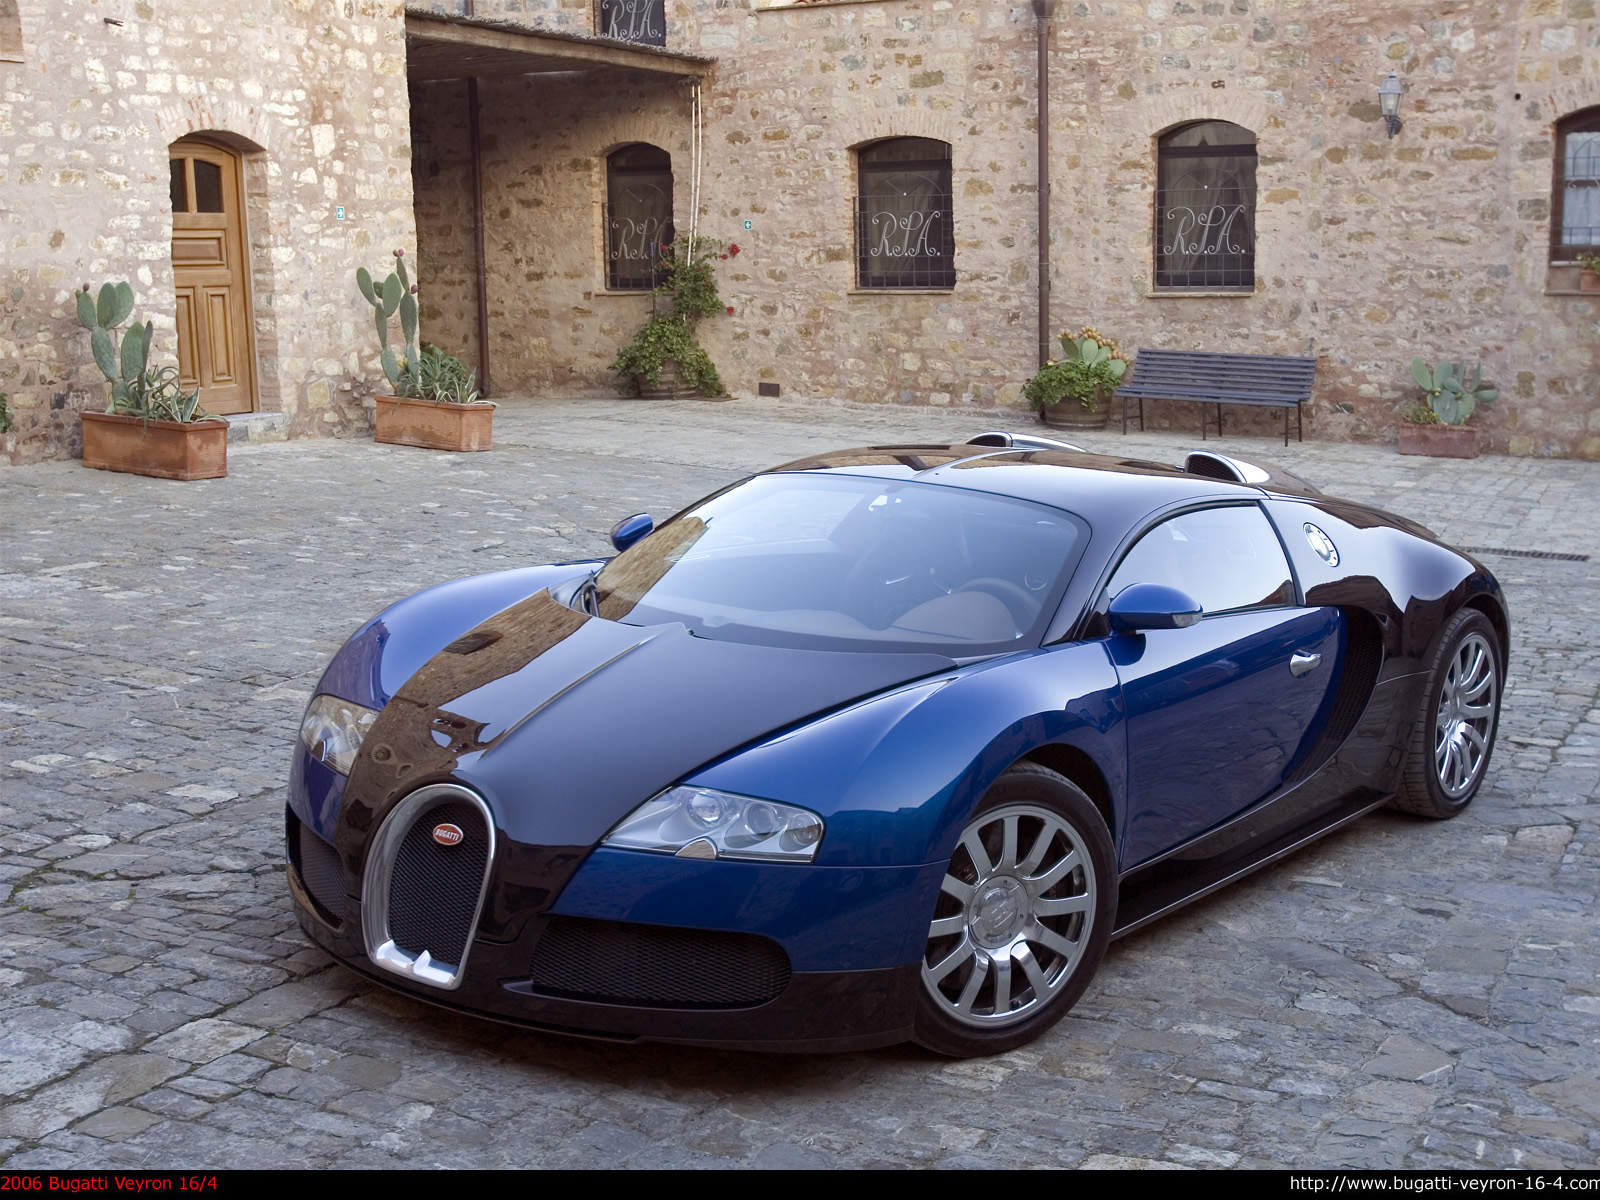 A clean Bugatti